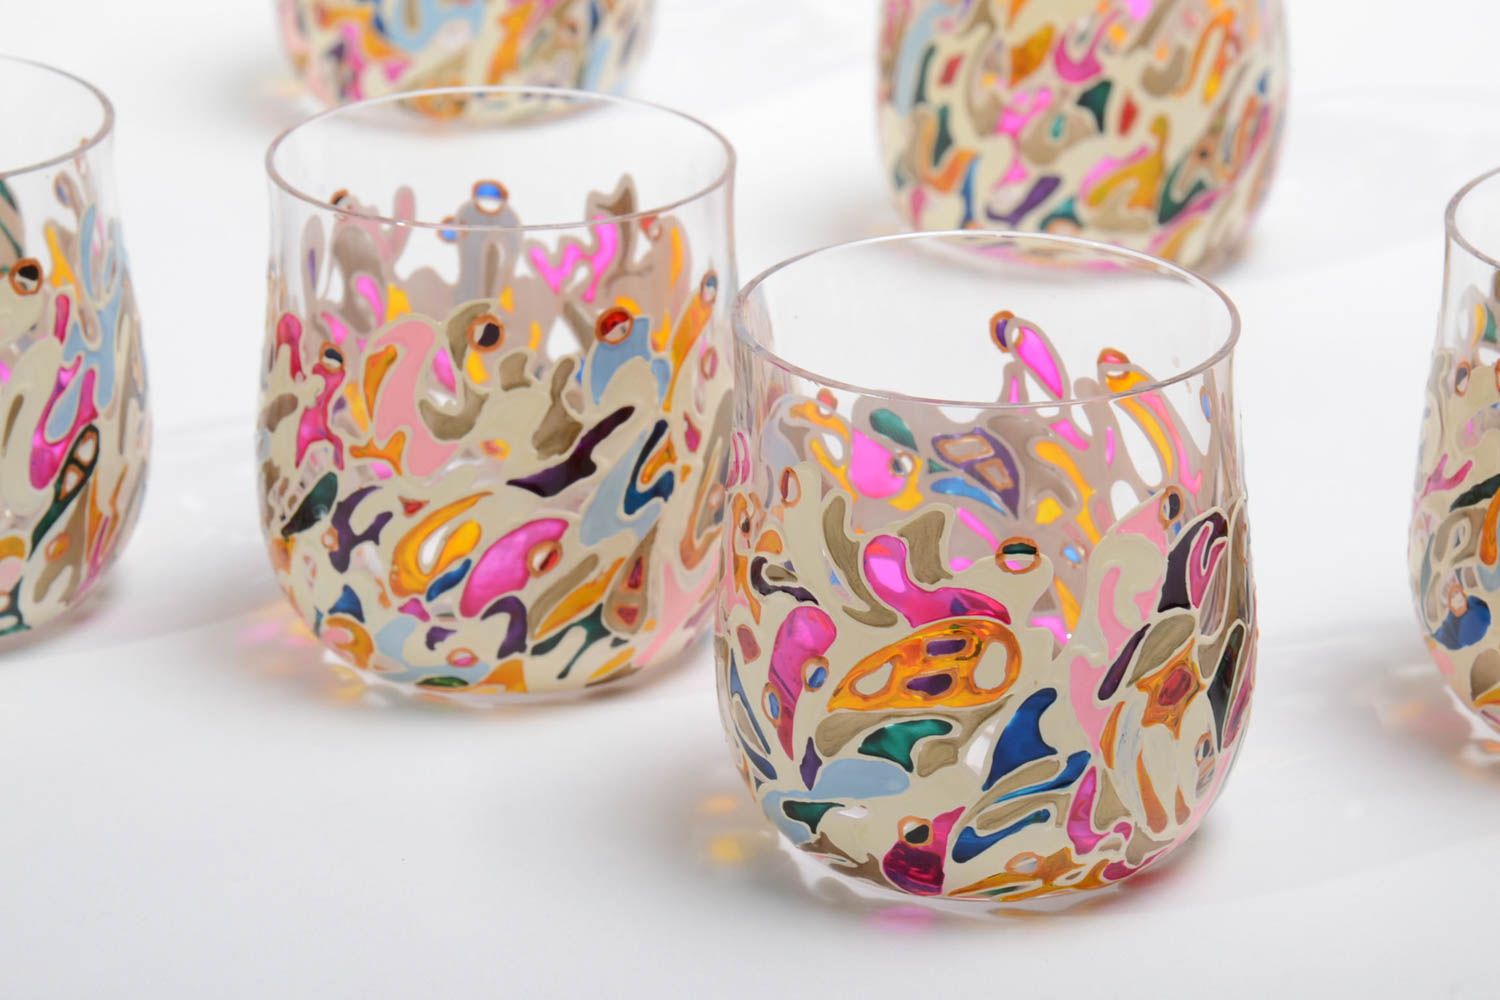 Unique wine glasses handmade 2 colored wine glasses 700 ml wedding gift idea